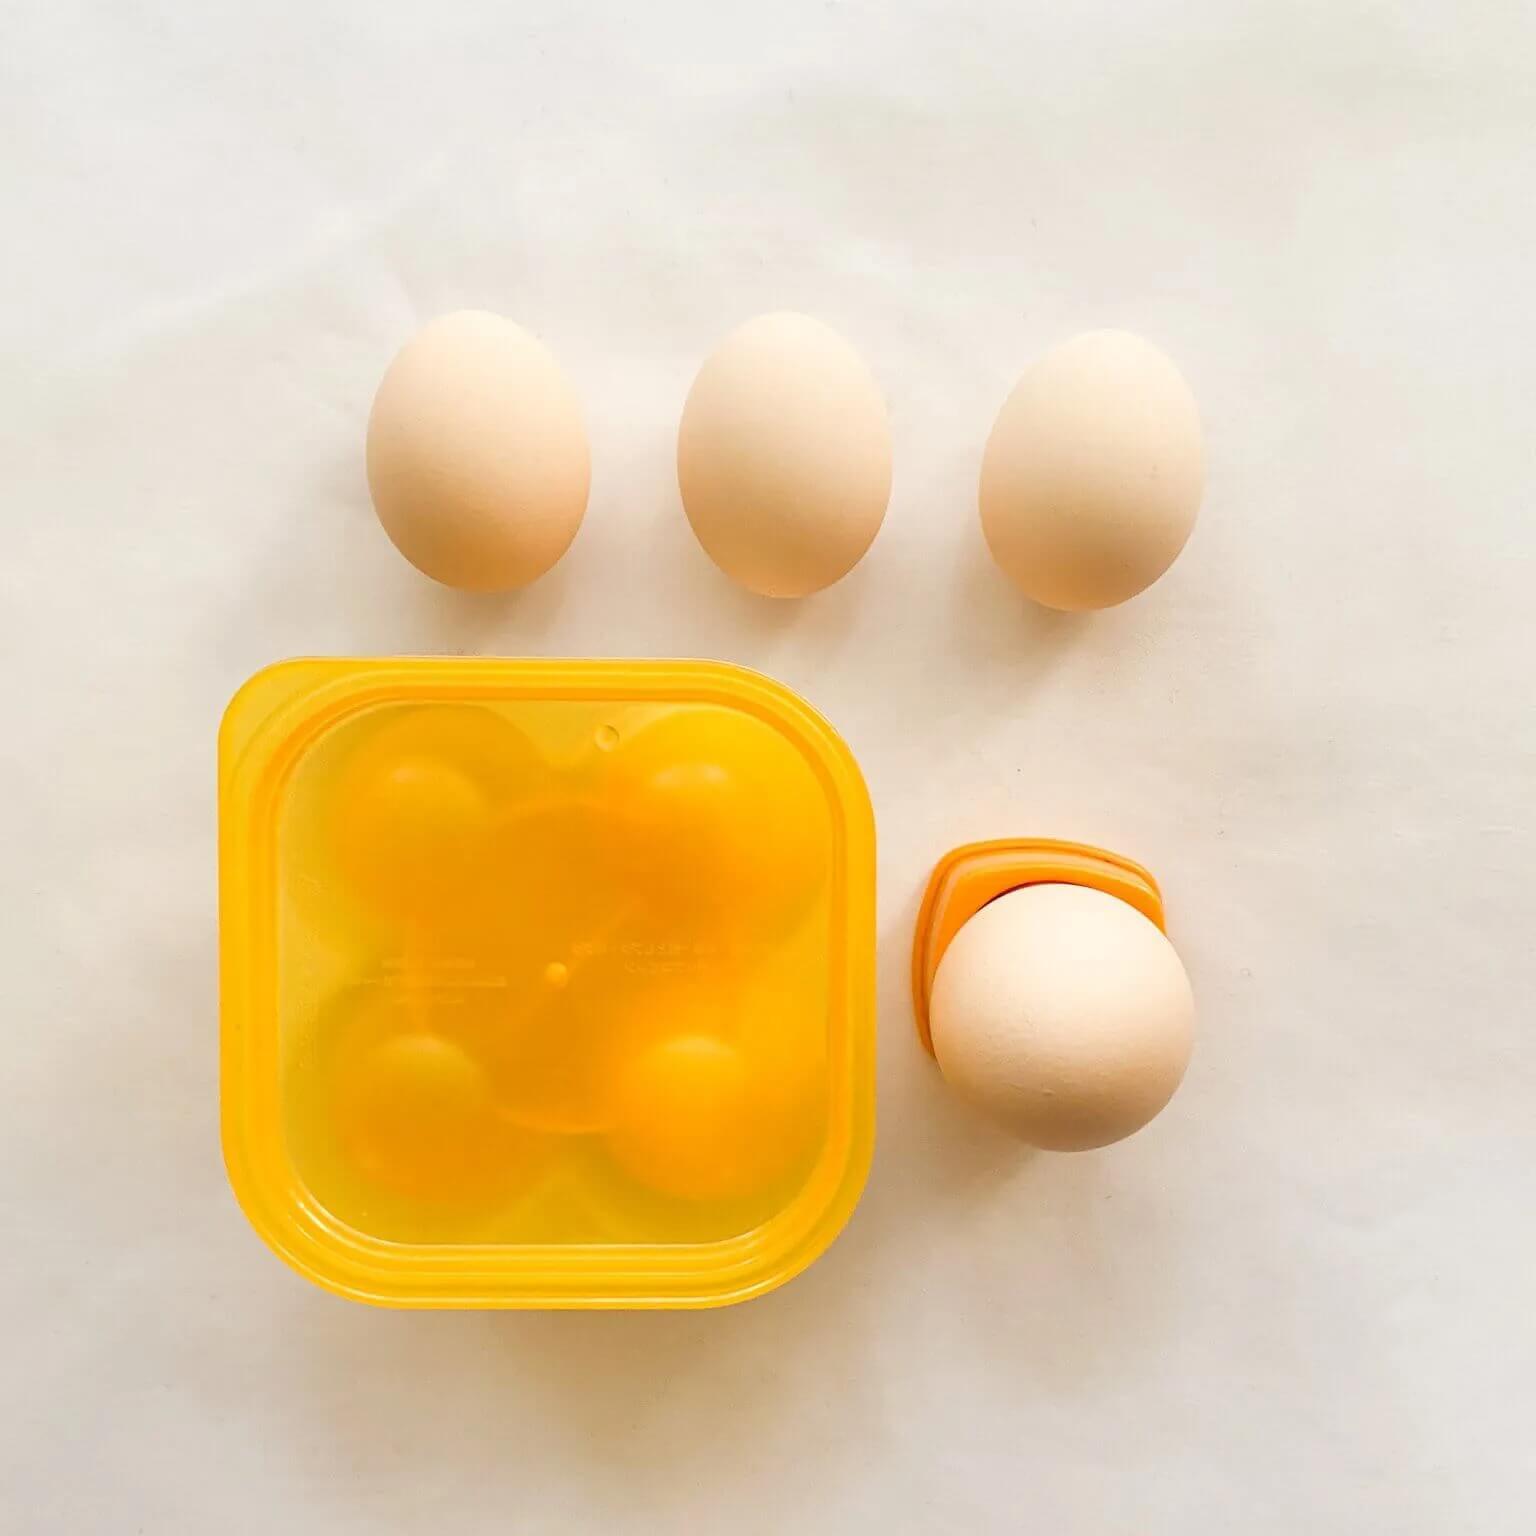 【ダイソー】卵の穴あけ器、味付け卵メーカー